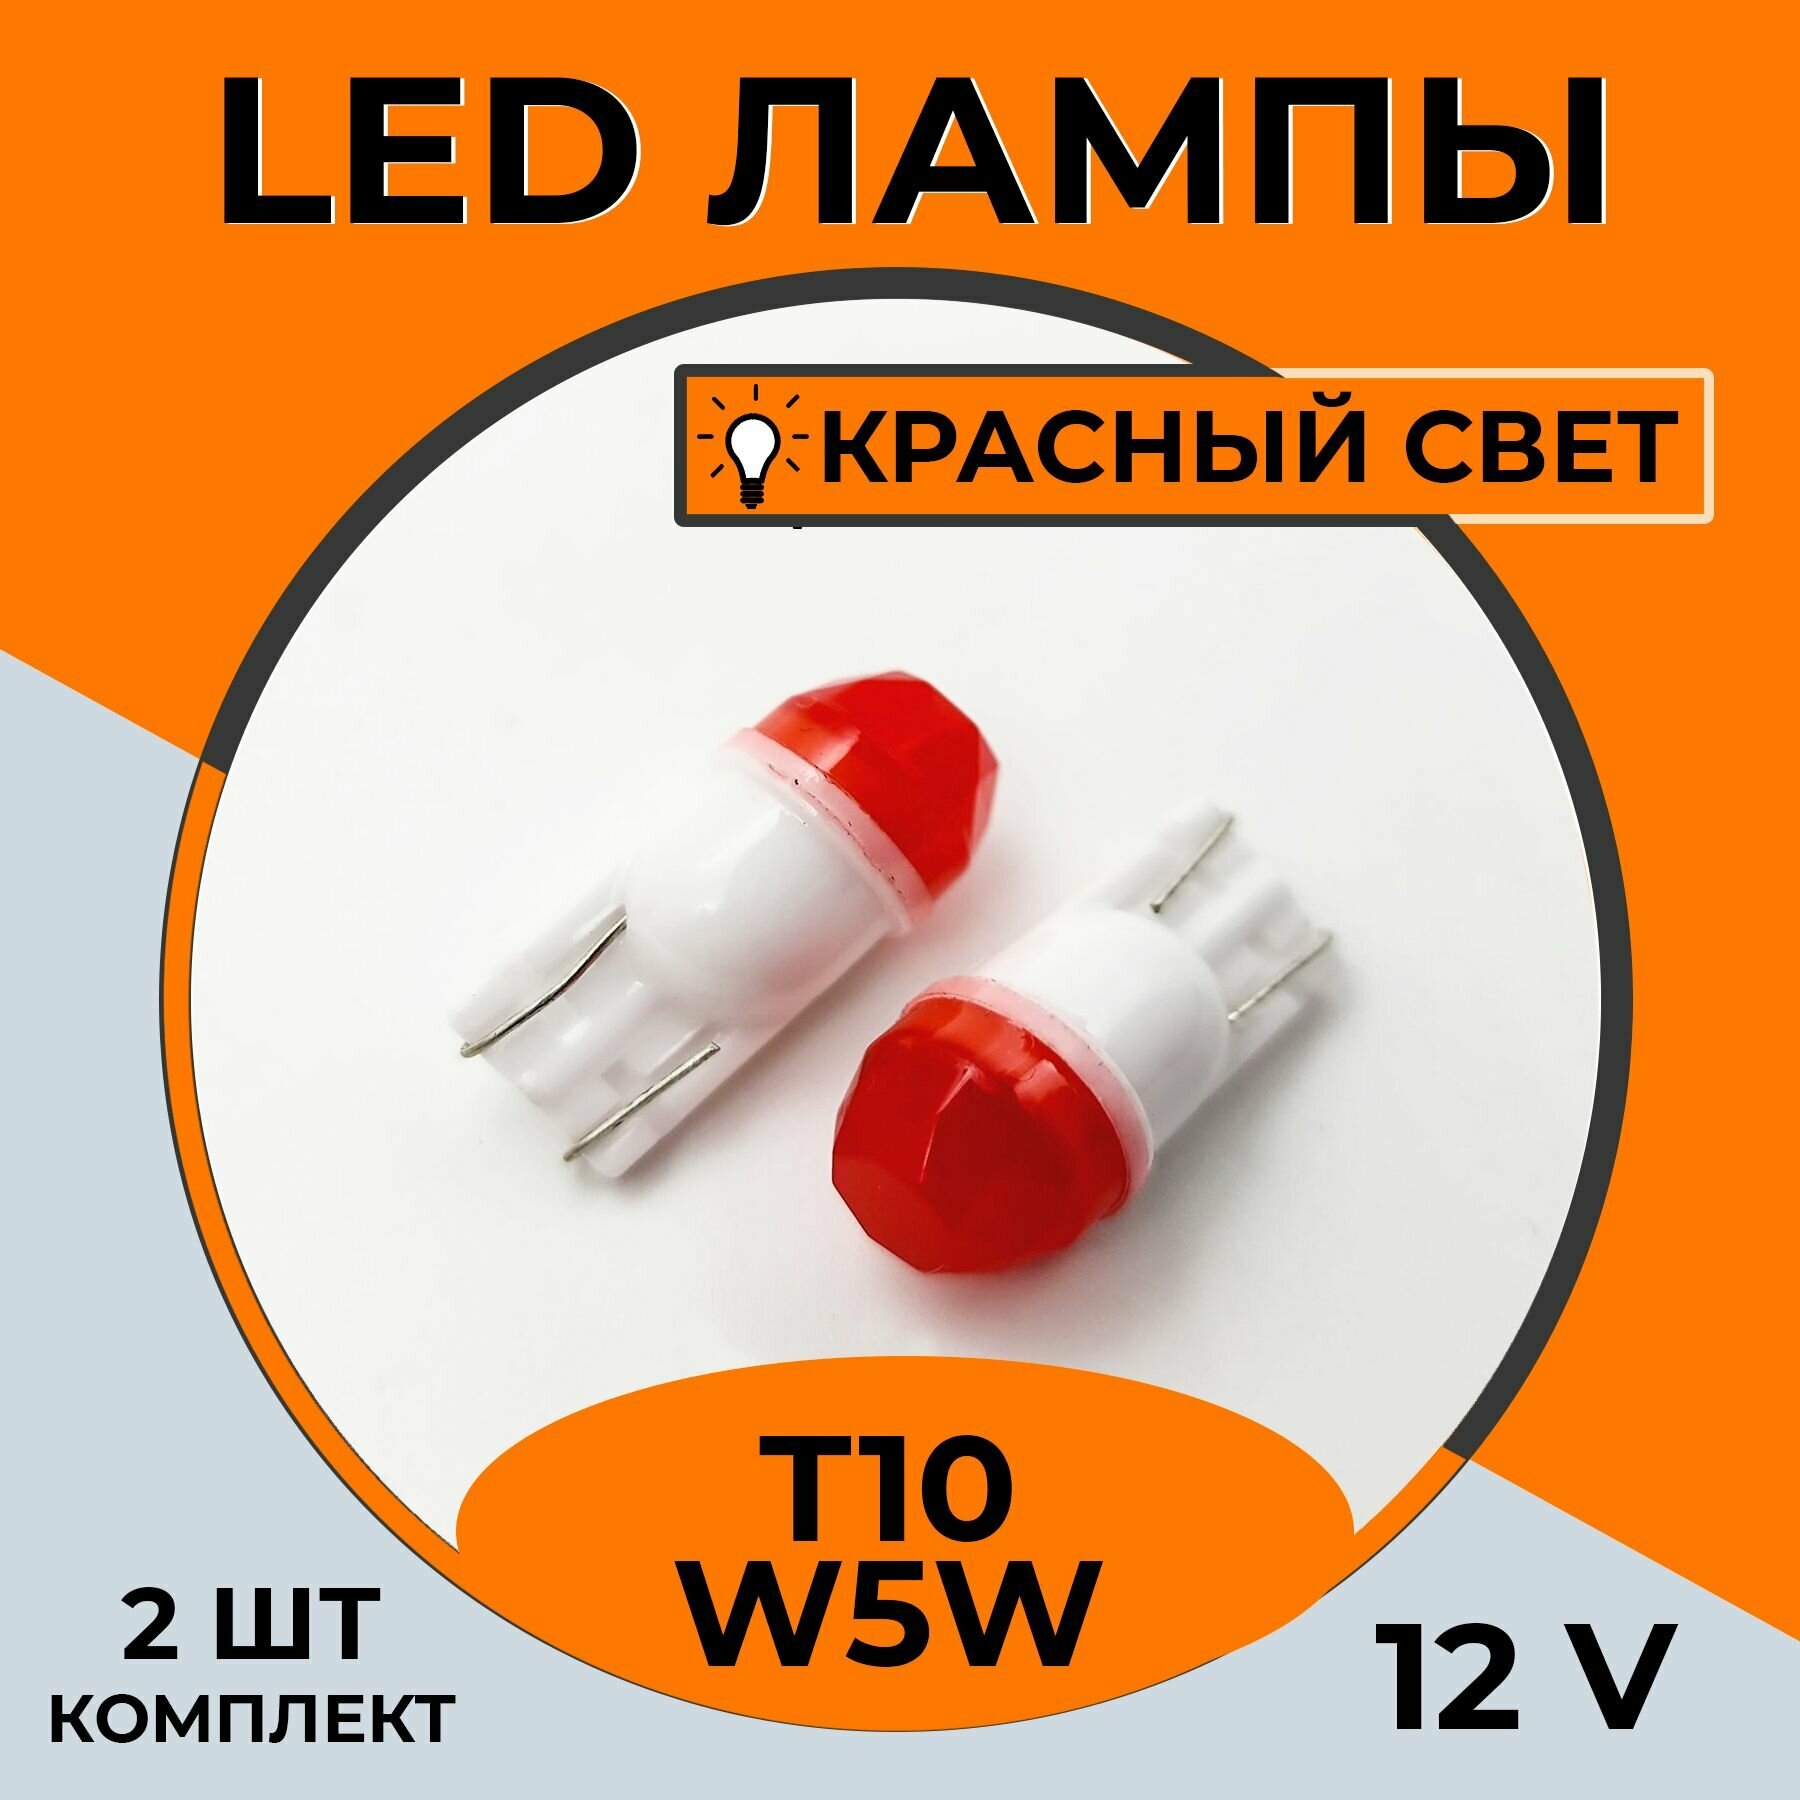 Автомобильная светодиодная LED лампа T10 W5W для подсветки салона, багажника, 12в красный свет, 2 шт